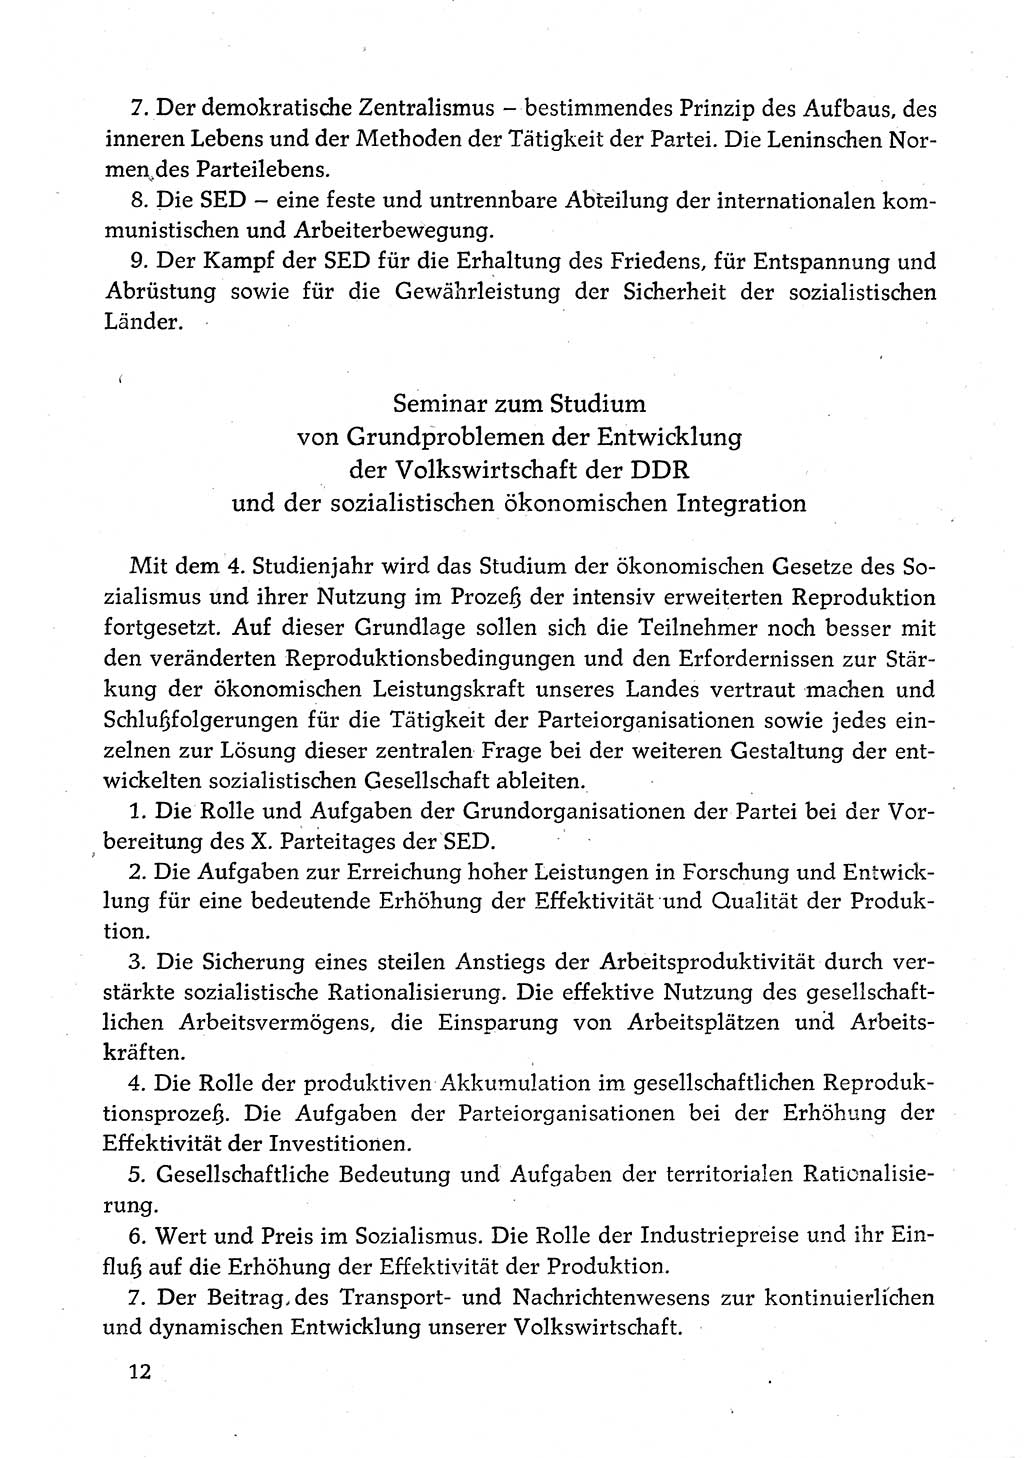 Dokumente der Sozialistischen Einheitspartei Deutschlands (SED) [Deutsche Demokratische Republik (DDR)] 1980-1981, Seite 12 (Dok. SED DDR 1980-1981, S. 12)